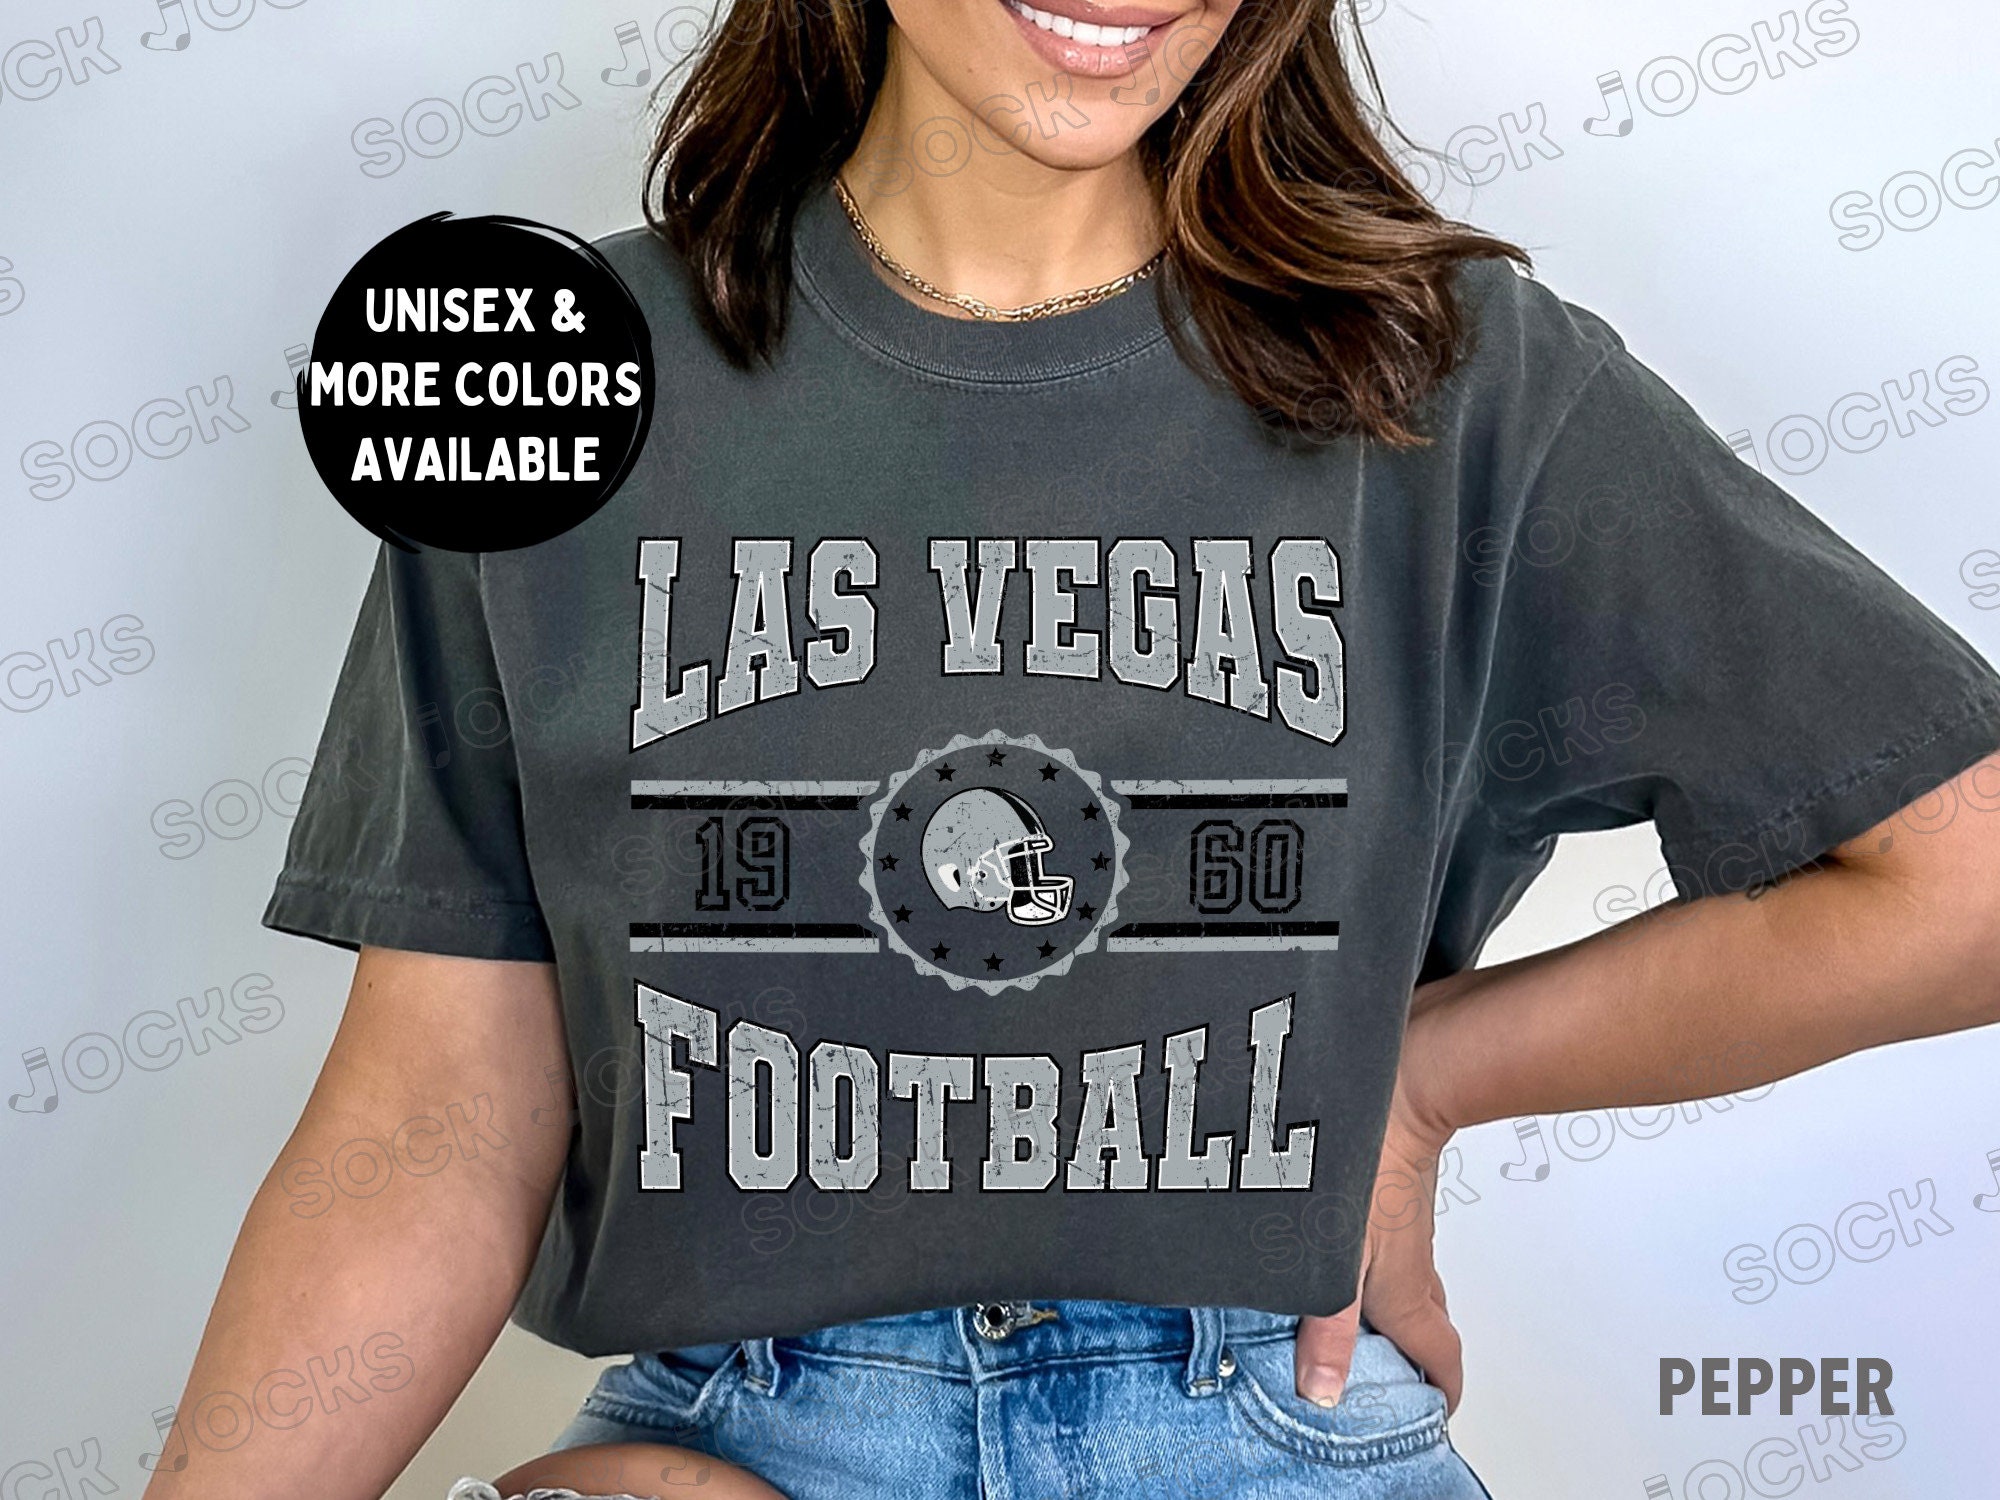 NFL Las Vegas Raiders Boys' Short Sleeve Jacobs Jersey - XS